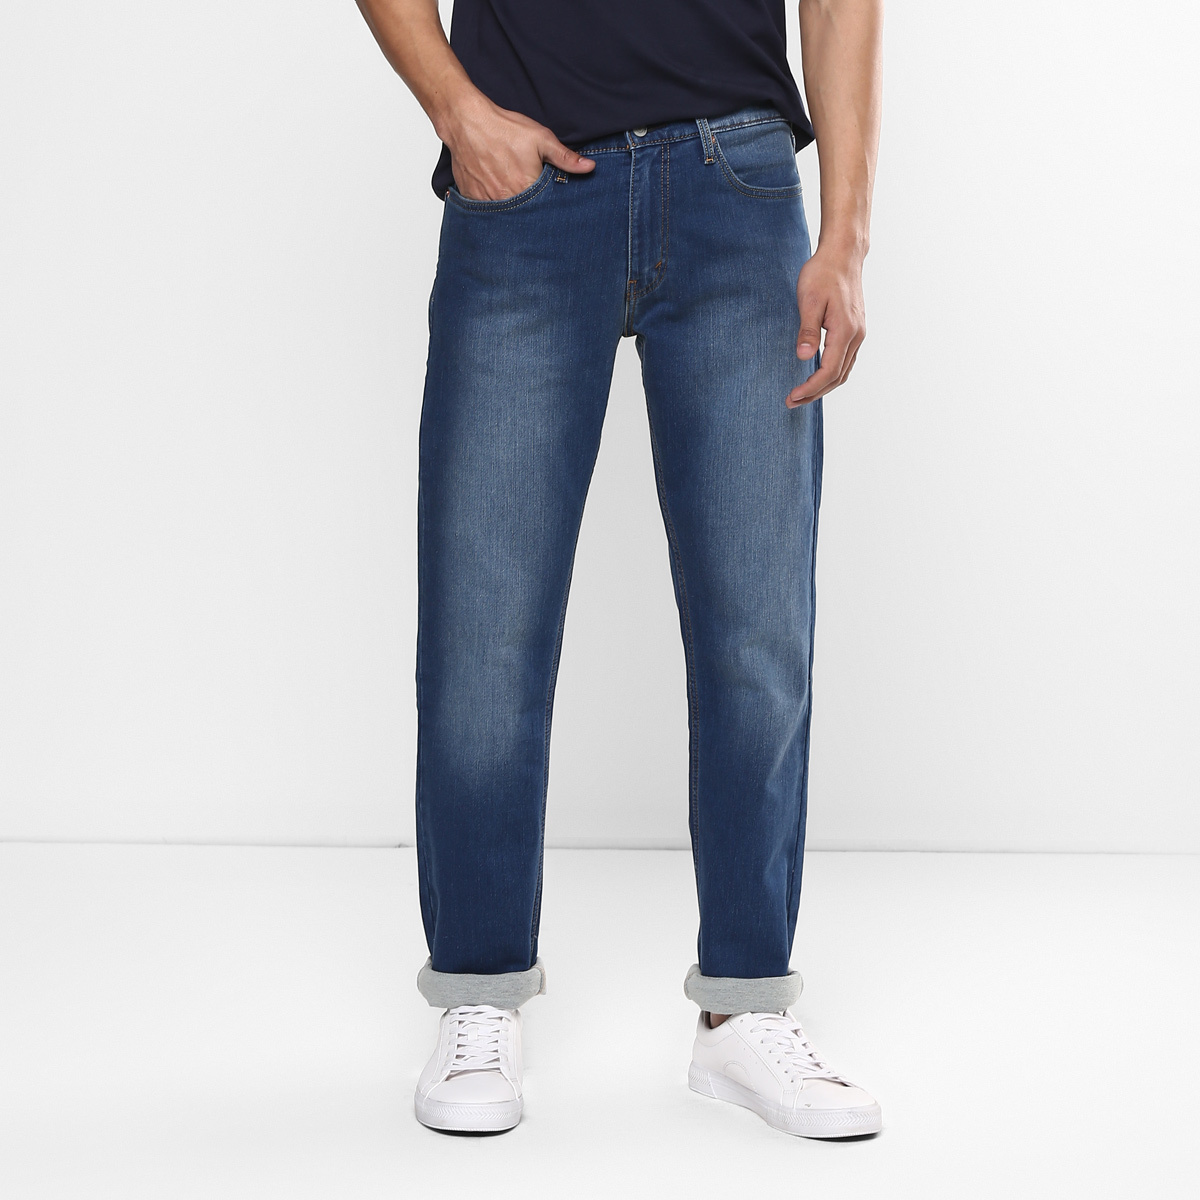 LEVIS MEN Single Length Jeans 23677-0180 Blue 36